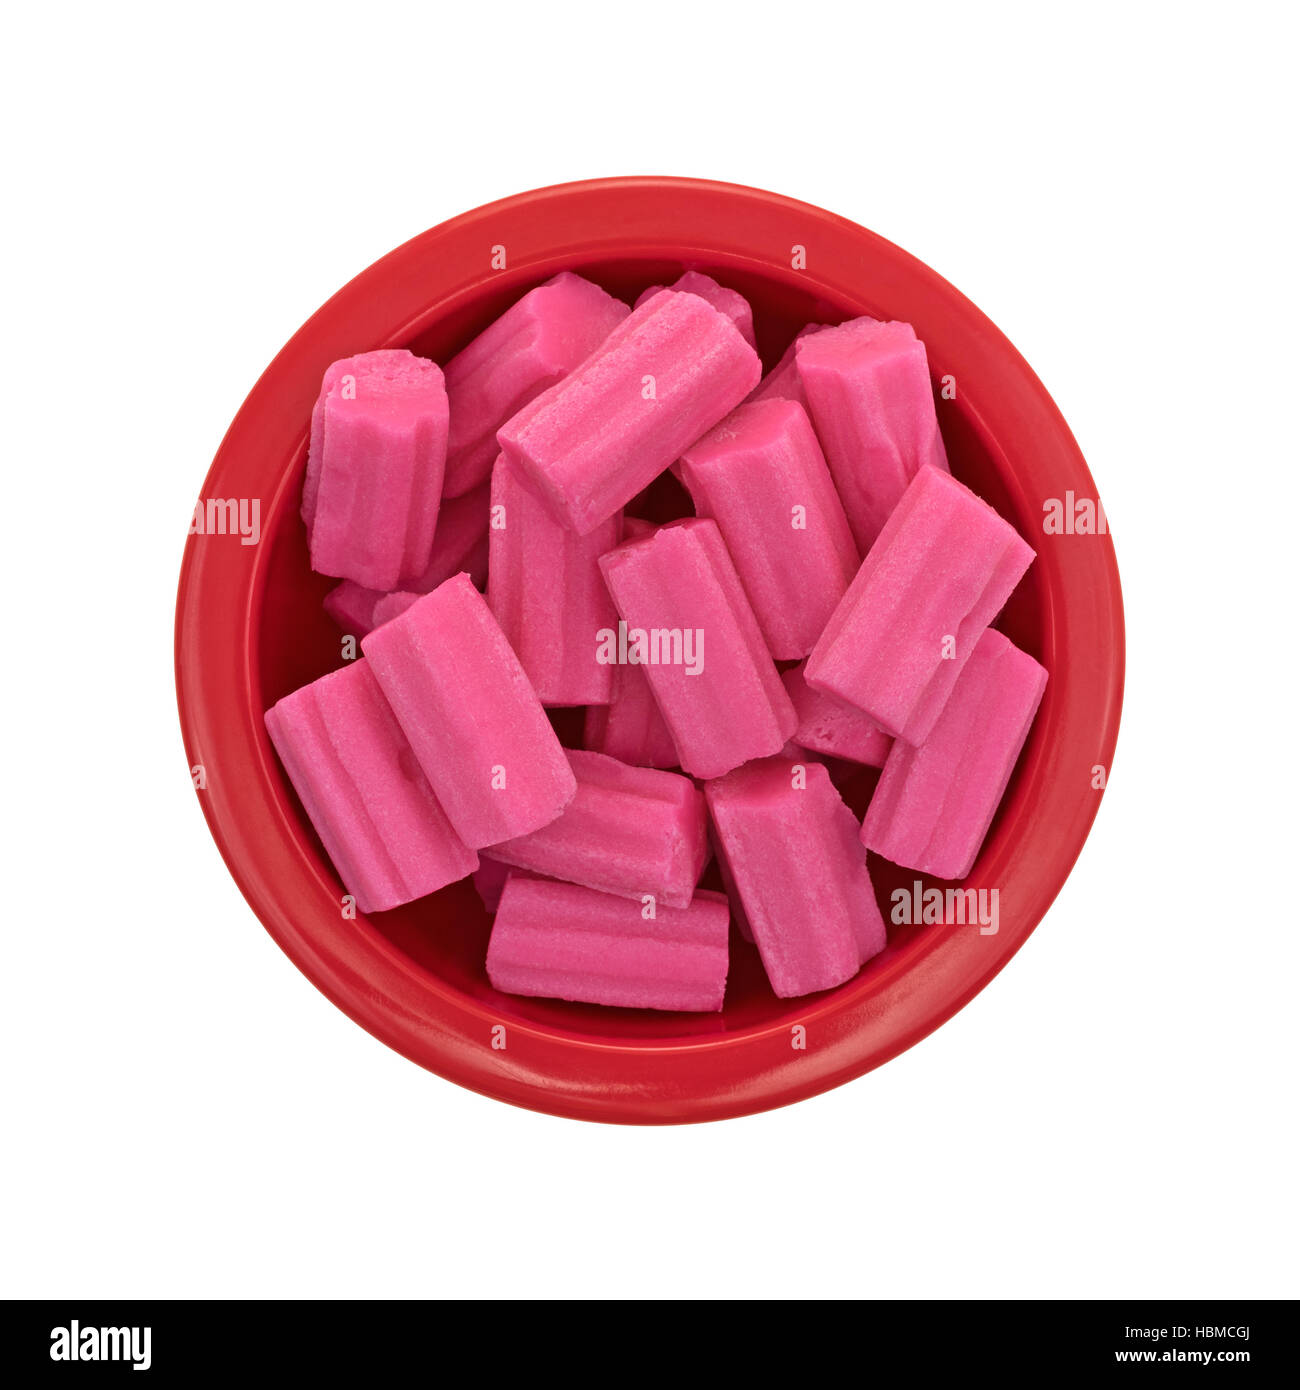 Draufsicht auf eine kleine rote Schüssel gefüllt mit rosa Kaugummi isoliert auf einem weißen Hintergrund. Stockfoto